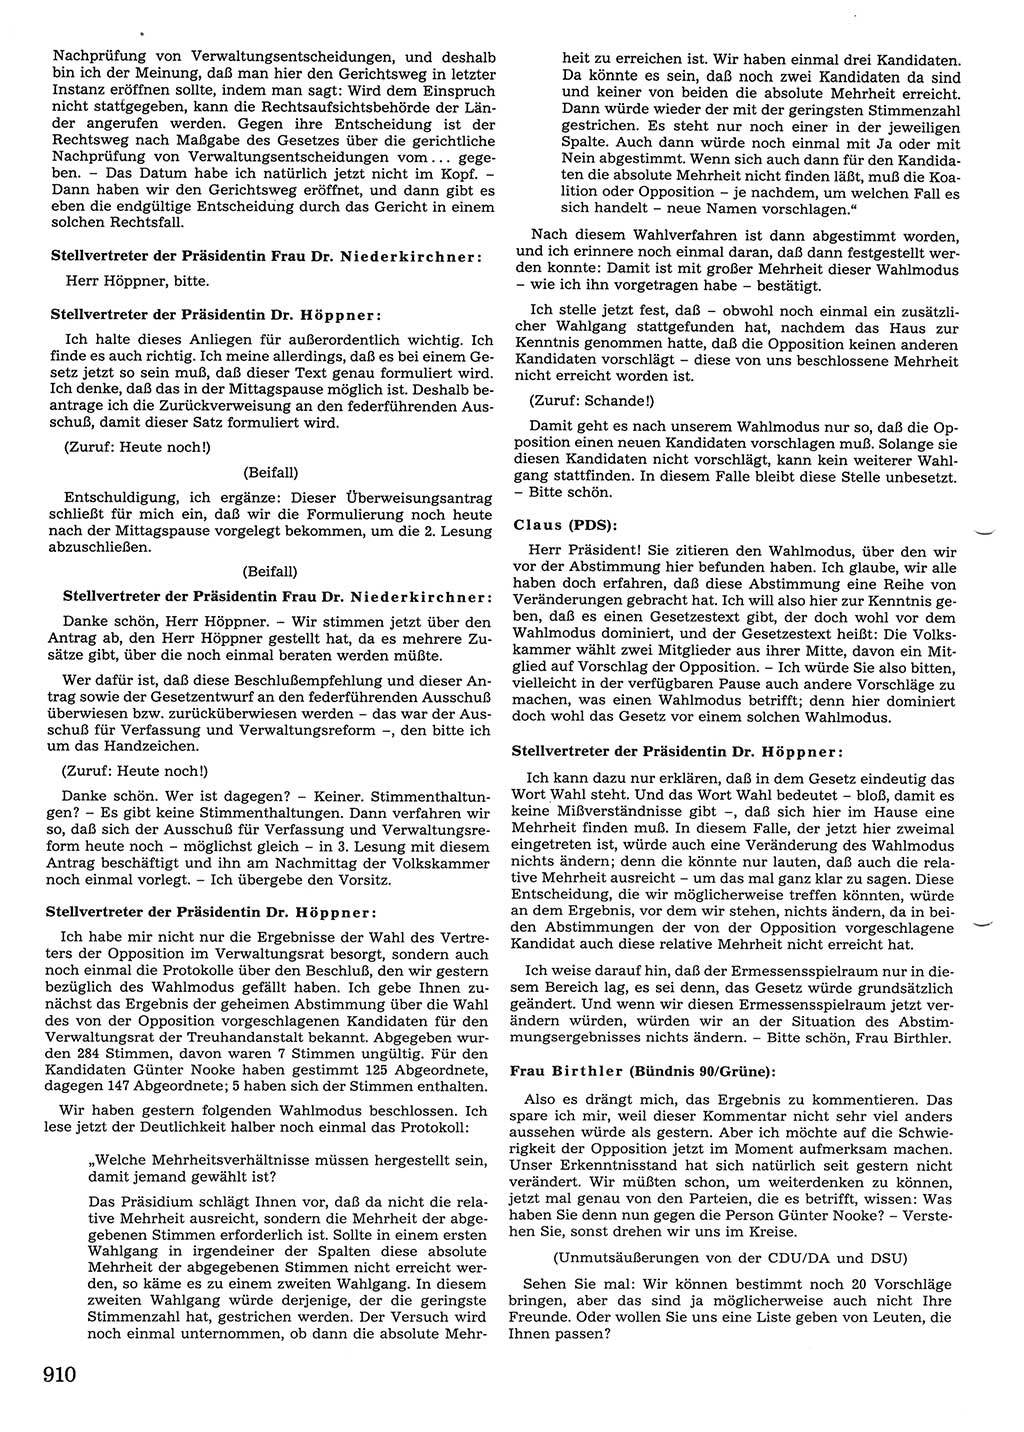 Tagungen der Volkskammer (VK) der Deutschen Demokratischen Republik (DDR), 10. Wahlperiode 1990, Seite 910 (VK. DDR 10. WP. 1990, Prot. Tg. 1-38, 5.4.-2.10.1990, S. 910)